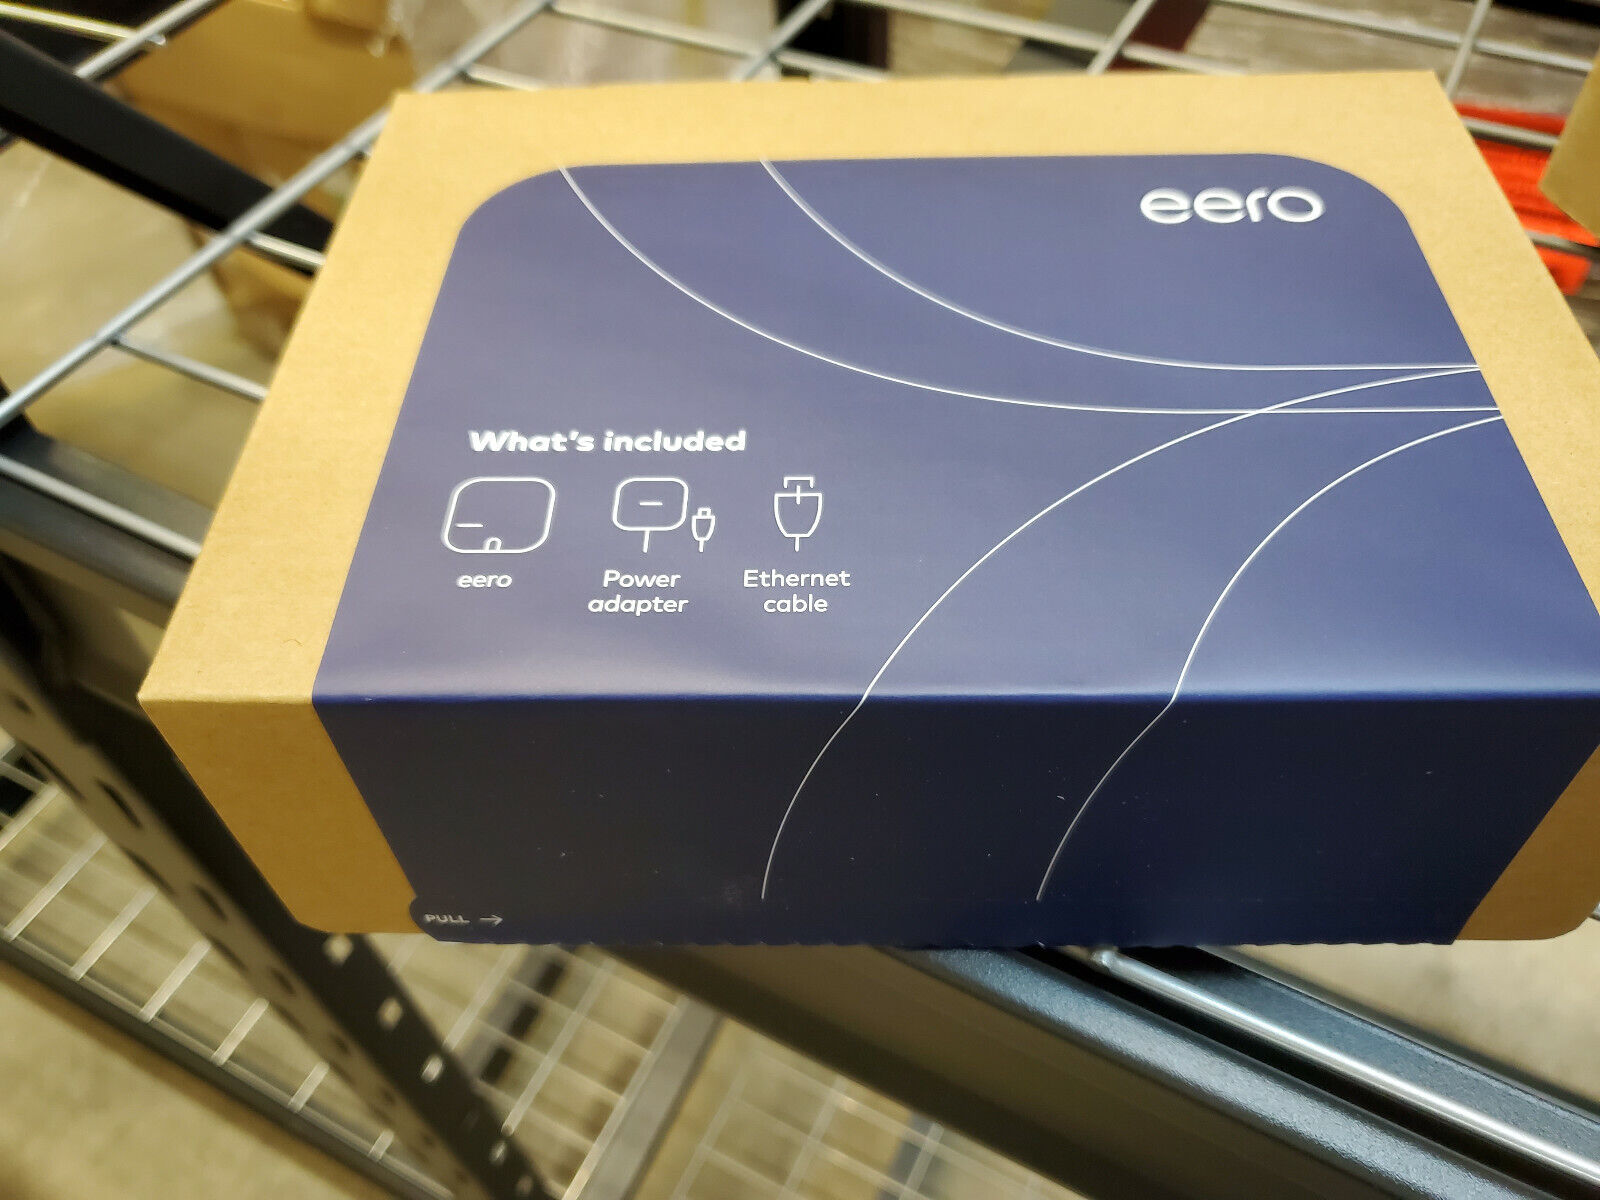 Eero Wi-Fi router B011101 LOT OF 6 UNITS- New in box eero B011101